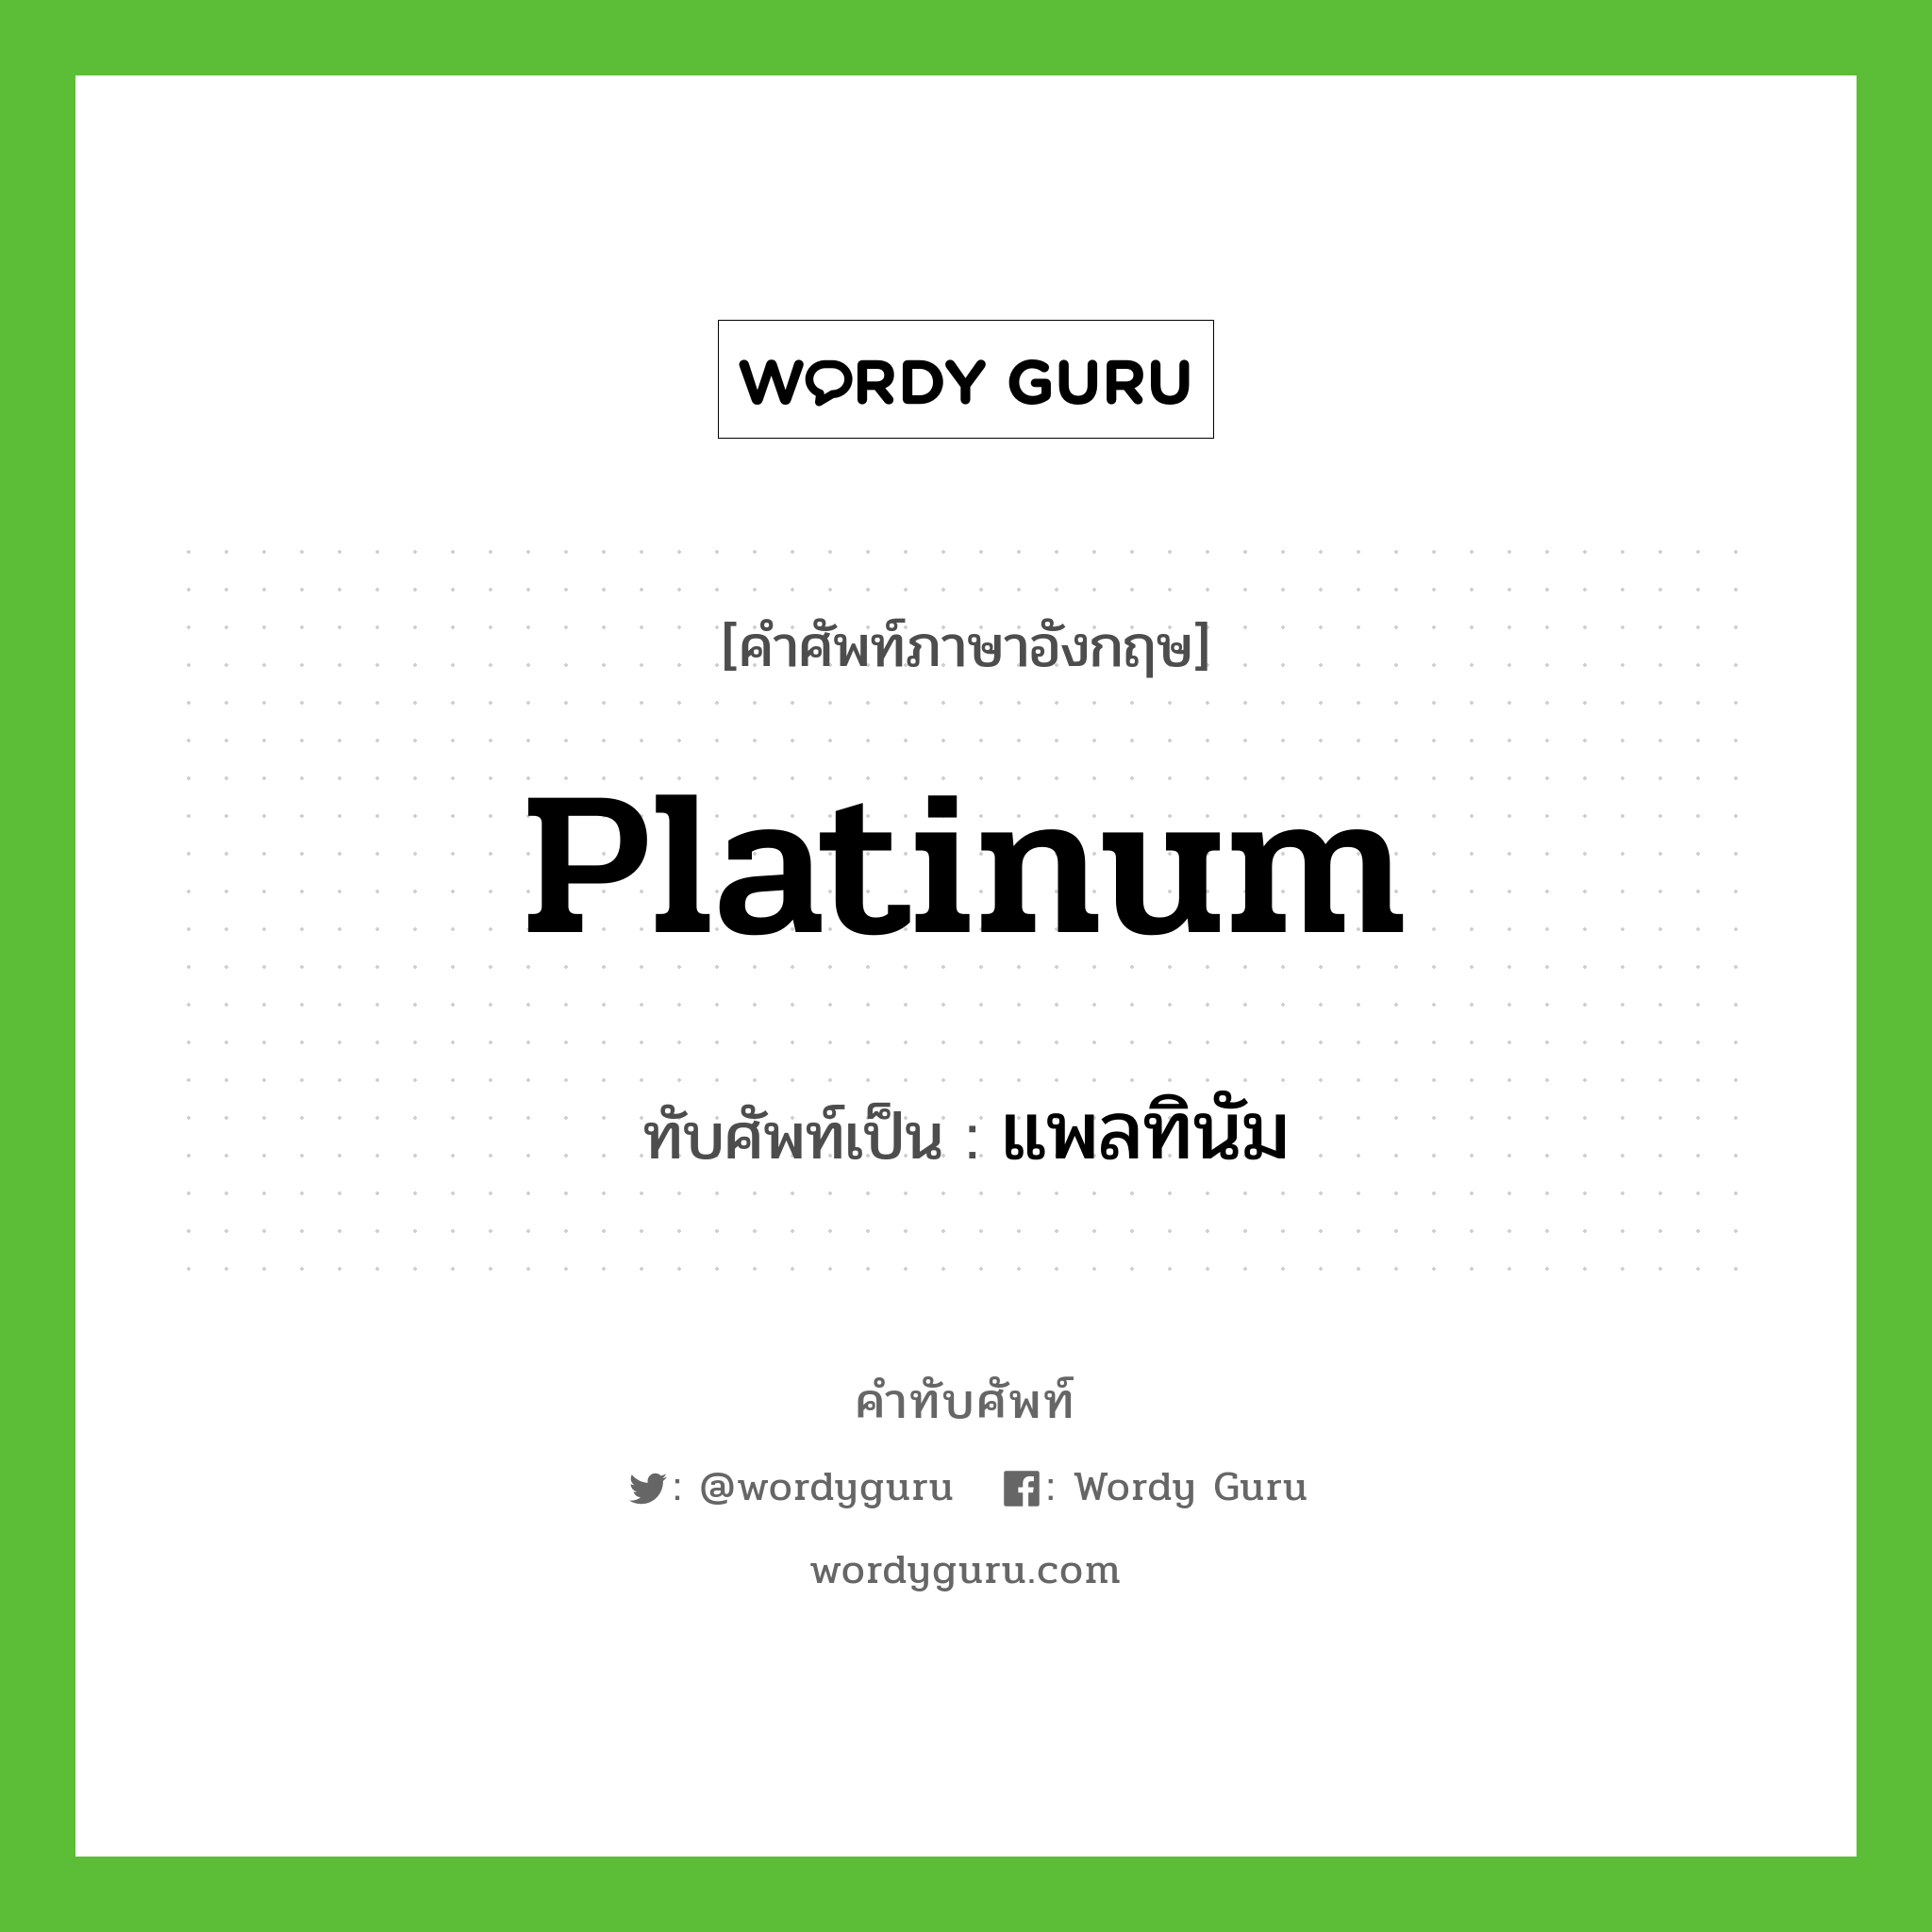 platinum เขียนเป็นคำไทยว่าอะไร?, คำศัพท์ภาษาอังกฤษ platinum ทับศัพท์เป็น แพลทินัม